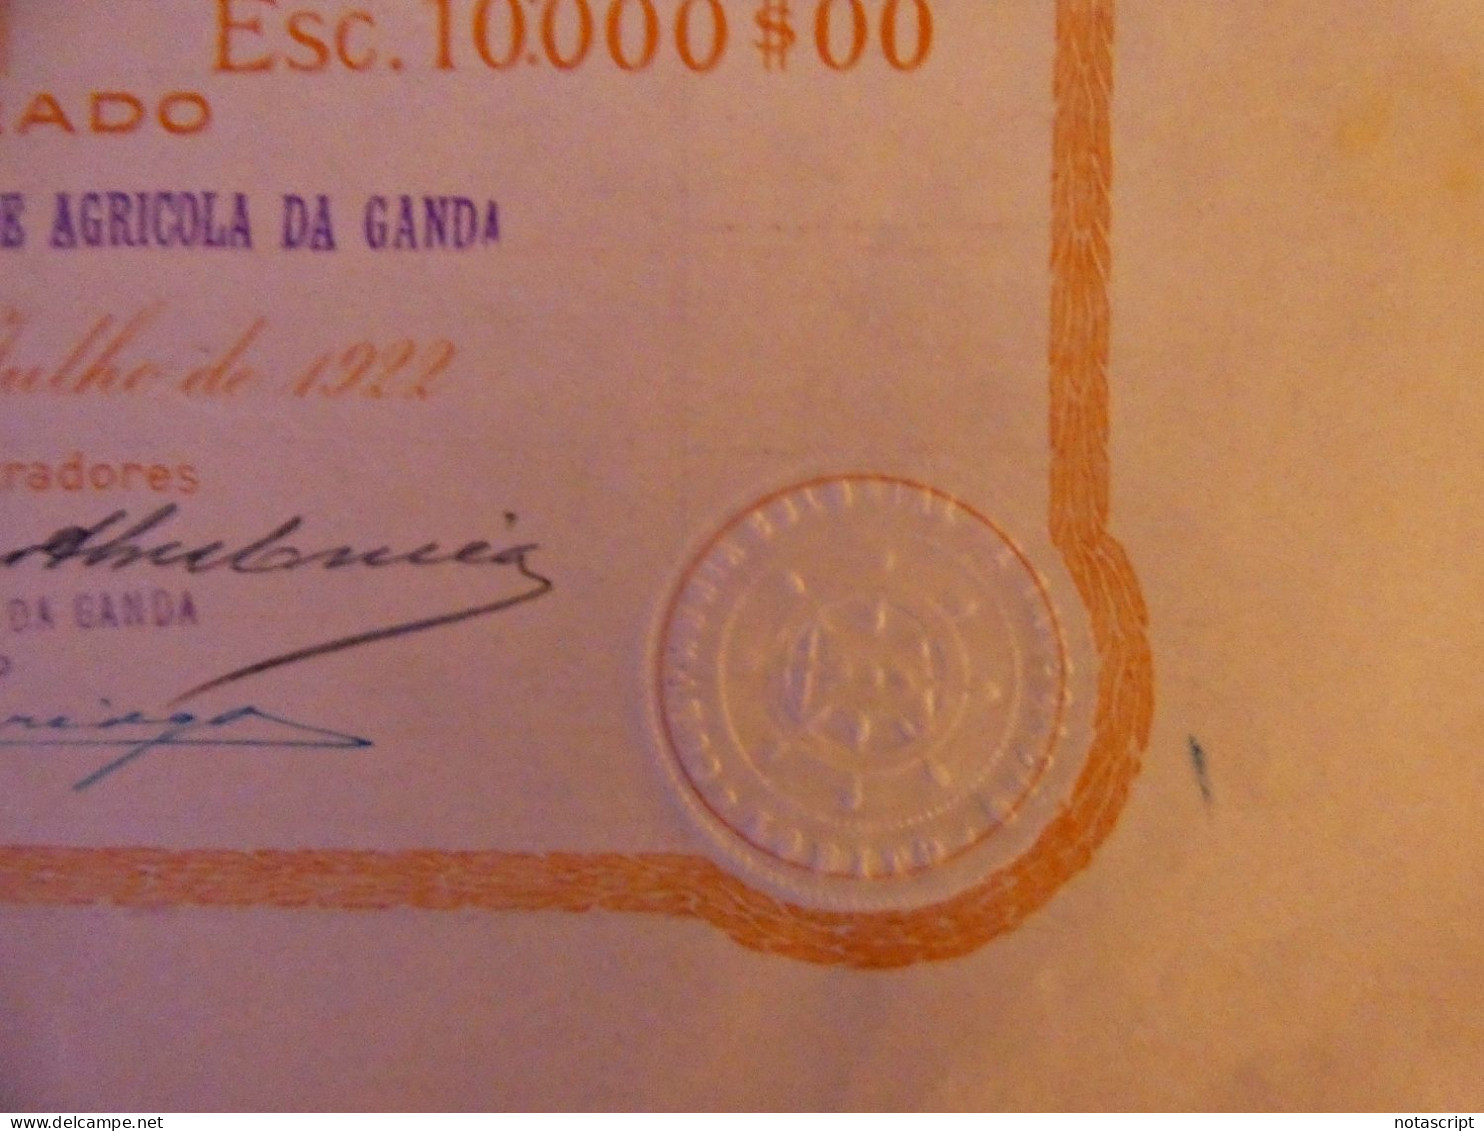 COMPANHIA COLONIAL  DE NAVEGAÇAO SA ,Lobito (Portuguese Angola)    1922 share Certificate - Navy